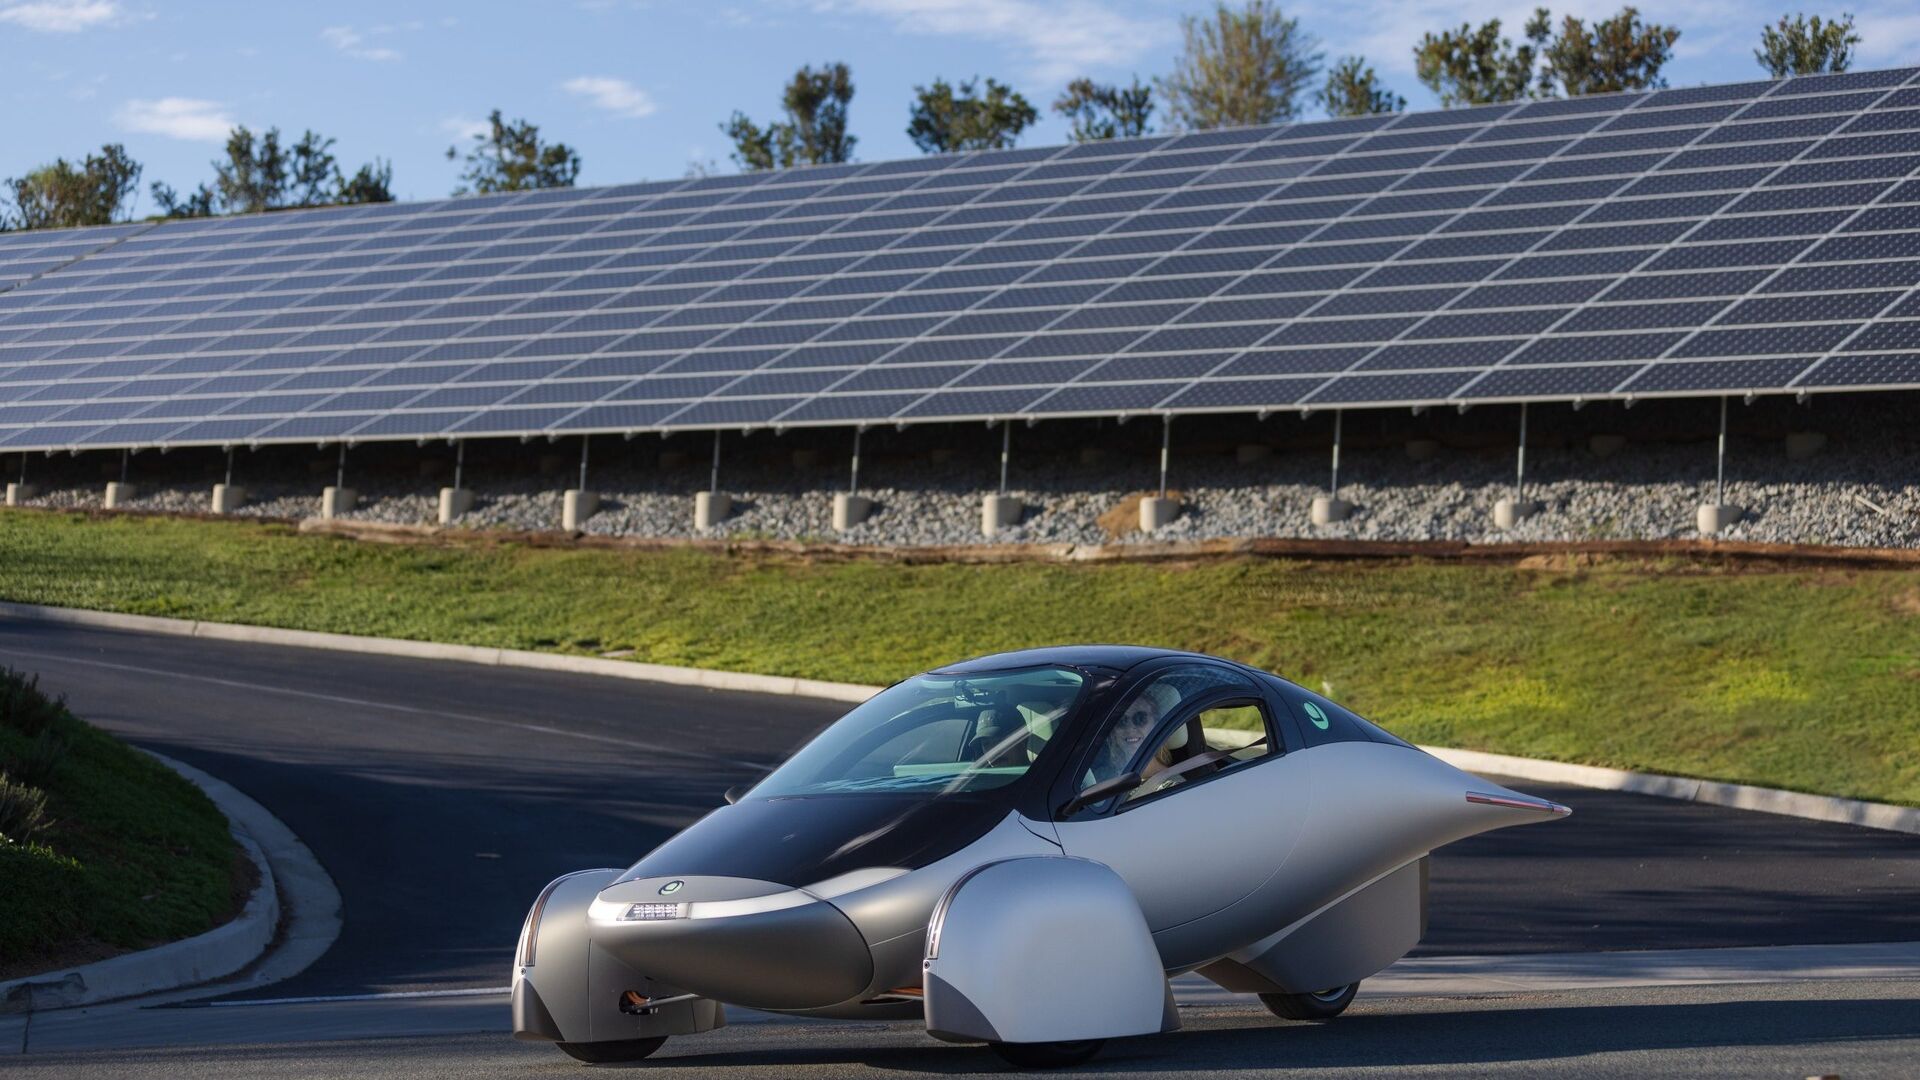 Carro solar: o Aptera Delta é o carro mais sustentável do mundo, com autonomia de 1600 km com bateria e 70 km com energia solar